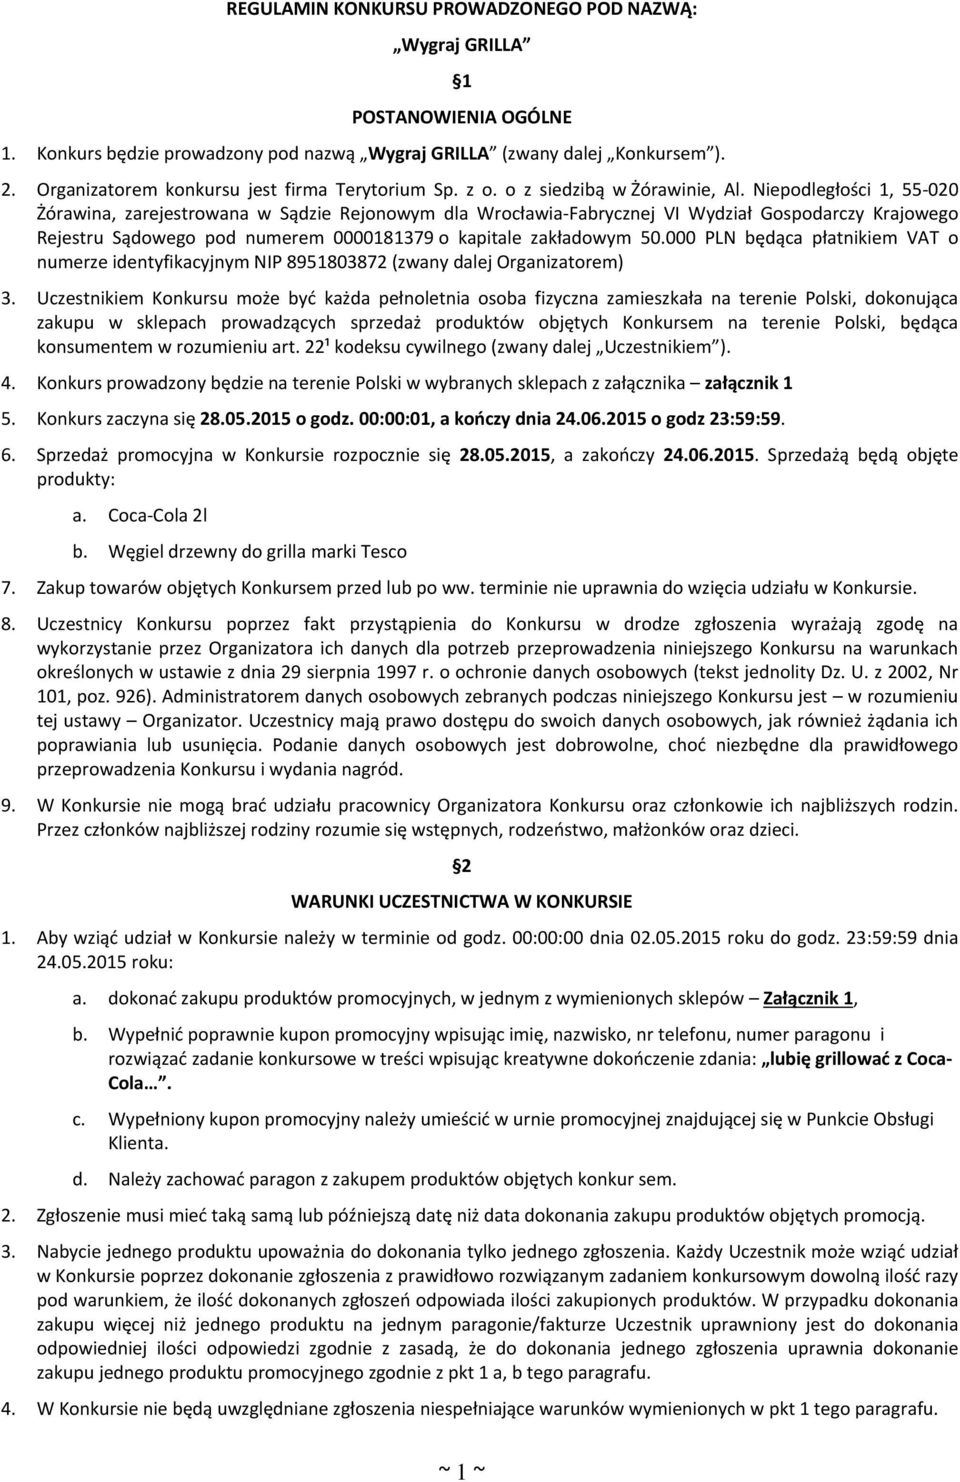 Niepodległości 1, 55-020 Żórawina, zarejestrowana w Sądzie Rejonowym dla Wrocławia-Fabrycznej VI Wydział Gospodarczy Krajowego Rejestru Sądowego pod numerem 0000181379 o kapitale zakładowym 50.